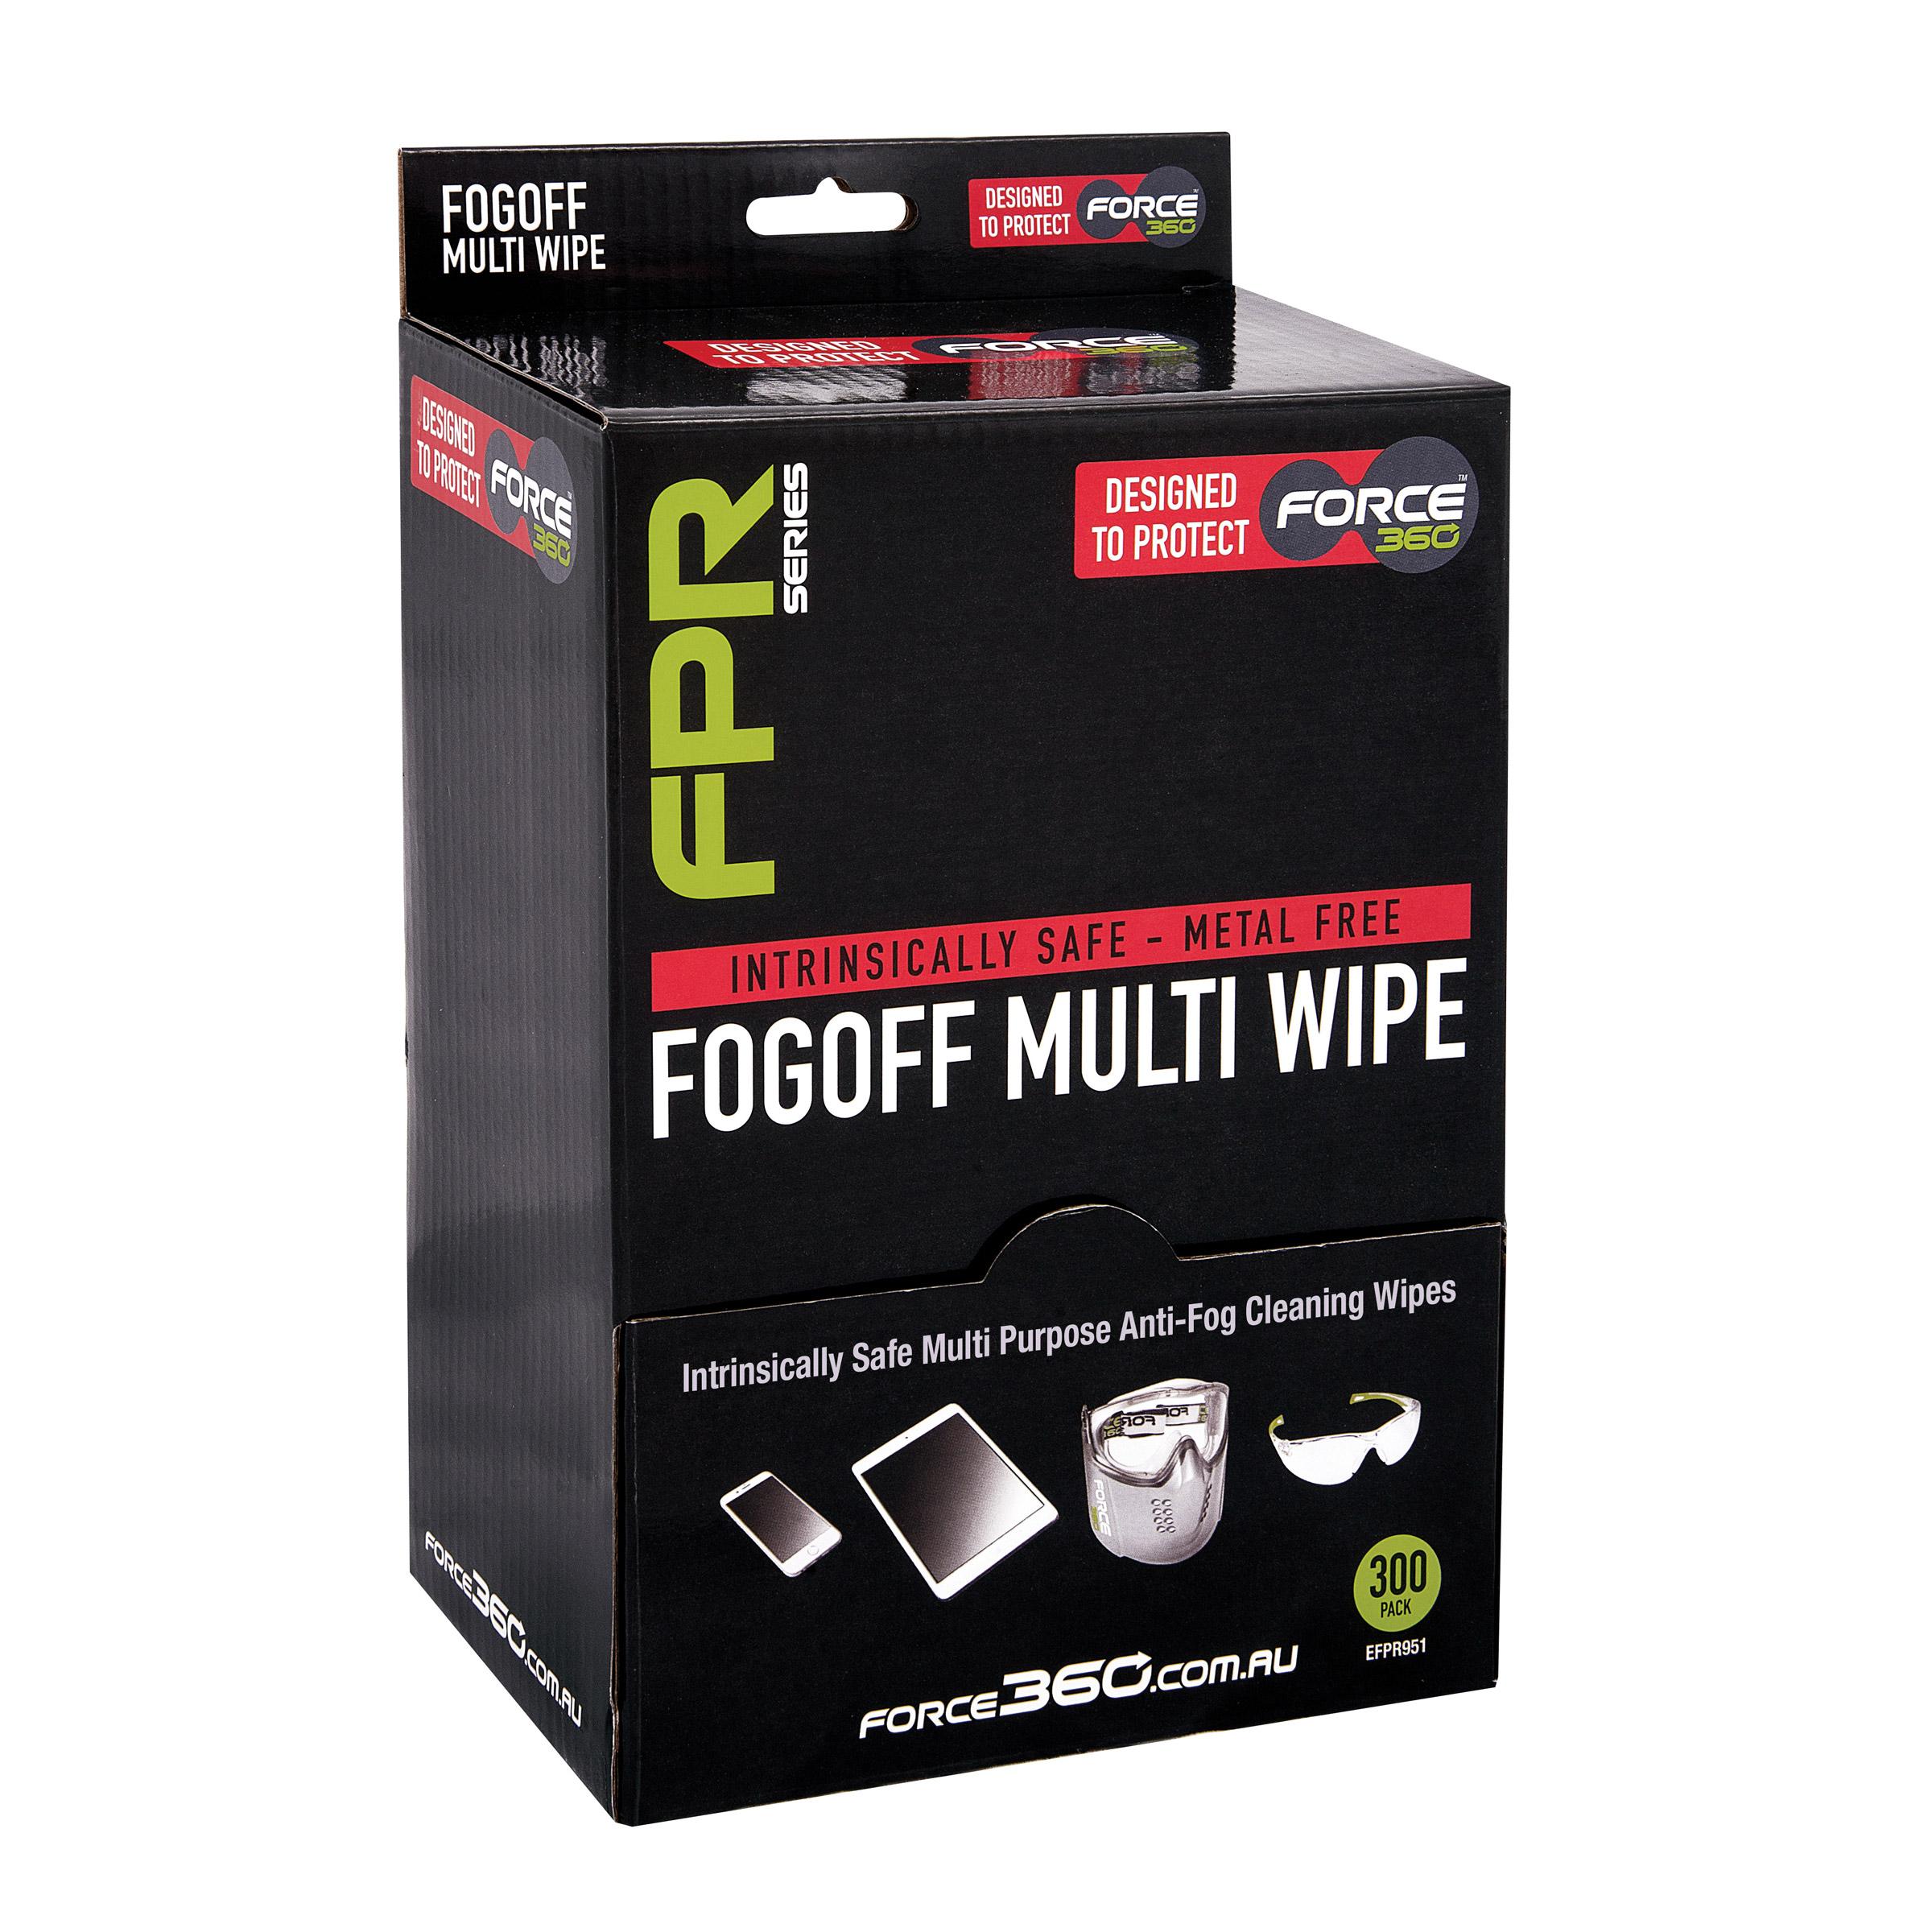 F360 Fog Off Intrinsically Safe Multi Wipe